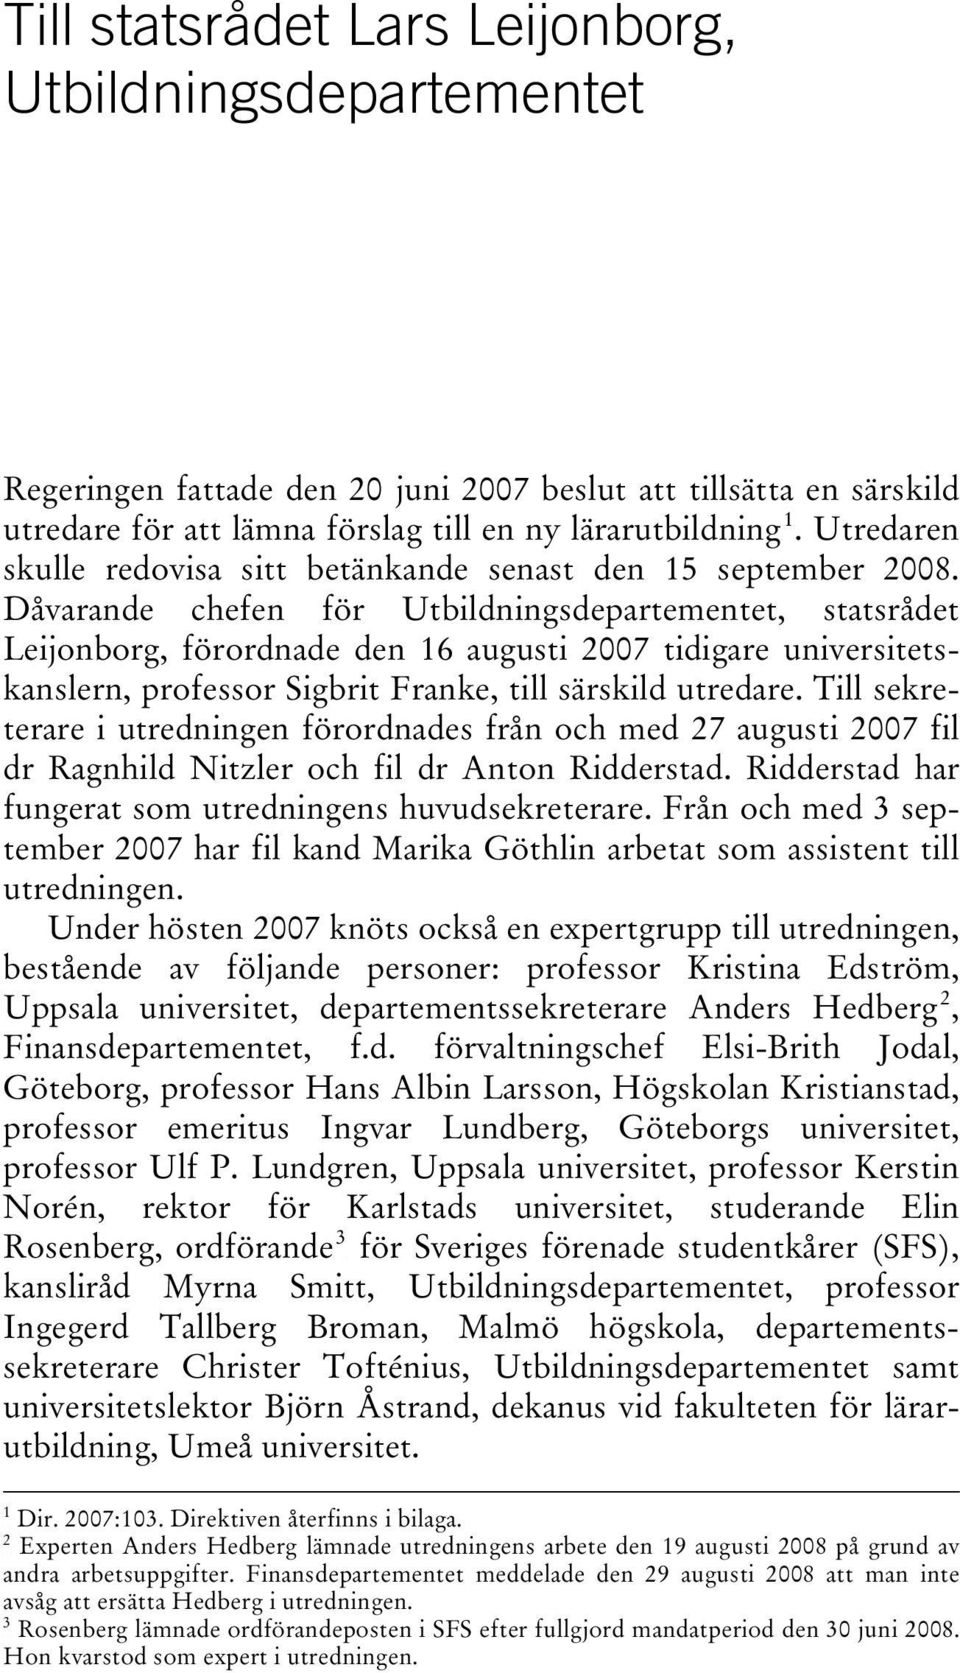 Dåvarande chefen för Utbildningsdepartementet, statsrådet Leijonborg, förordnade den 16 augusti 2007 tidigare universitetskanslern, professor Sigbrit Franke, till särskild utredare.